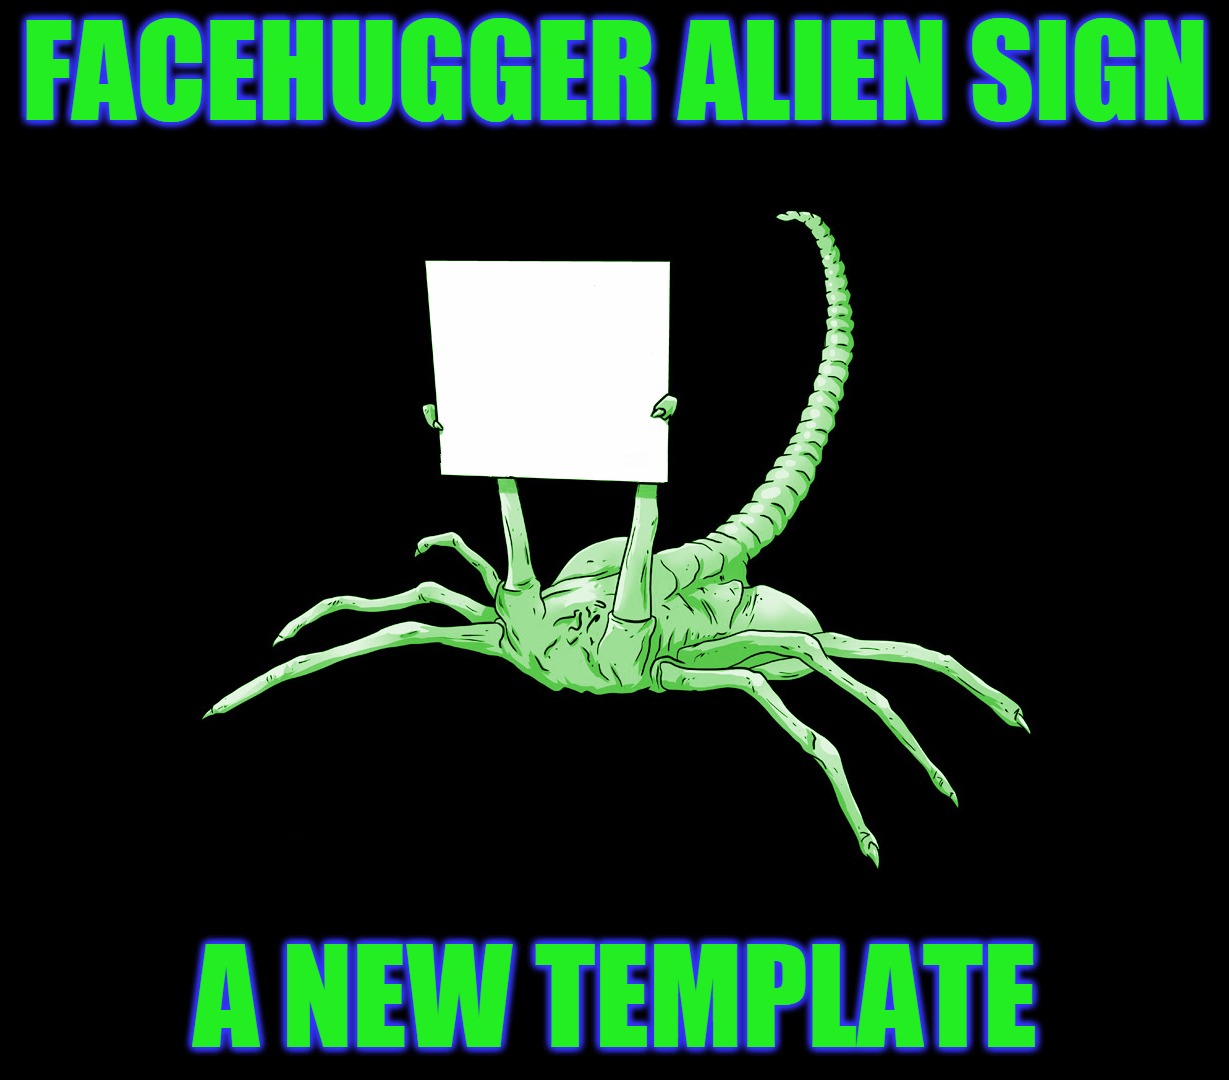 Facehugger Alien Sign: A New Template | FACEHUGGER ALIEN SIGN; A NEW TEMPLATE | image tagged in facehugger alien sign,memes,custom template,free hugs,facehugger,headfoot | made w/ Imgflip meme maker